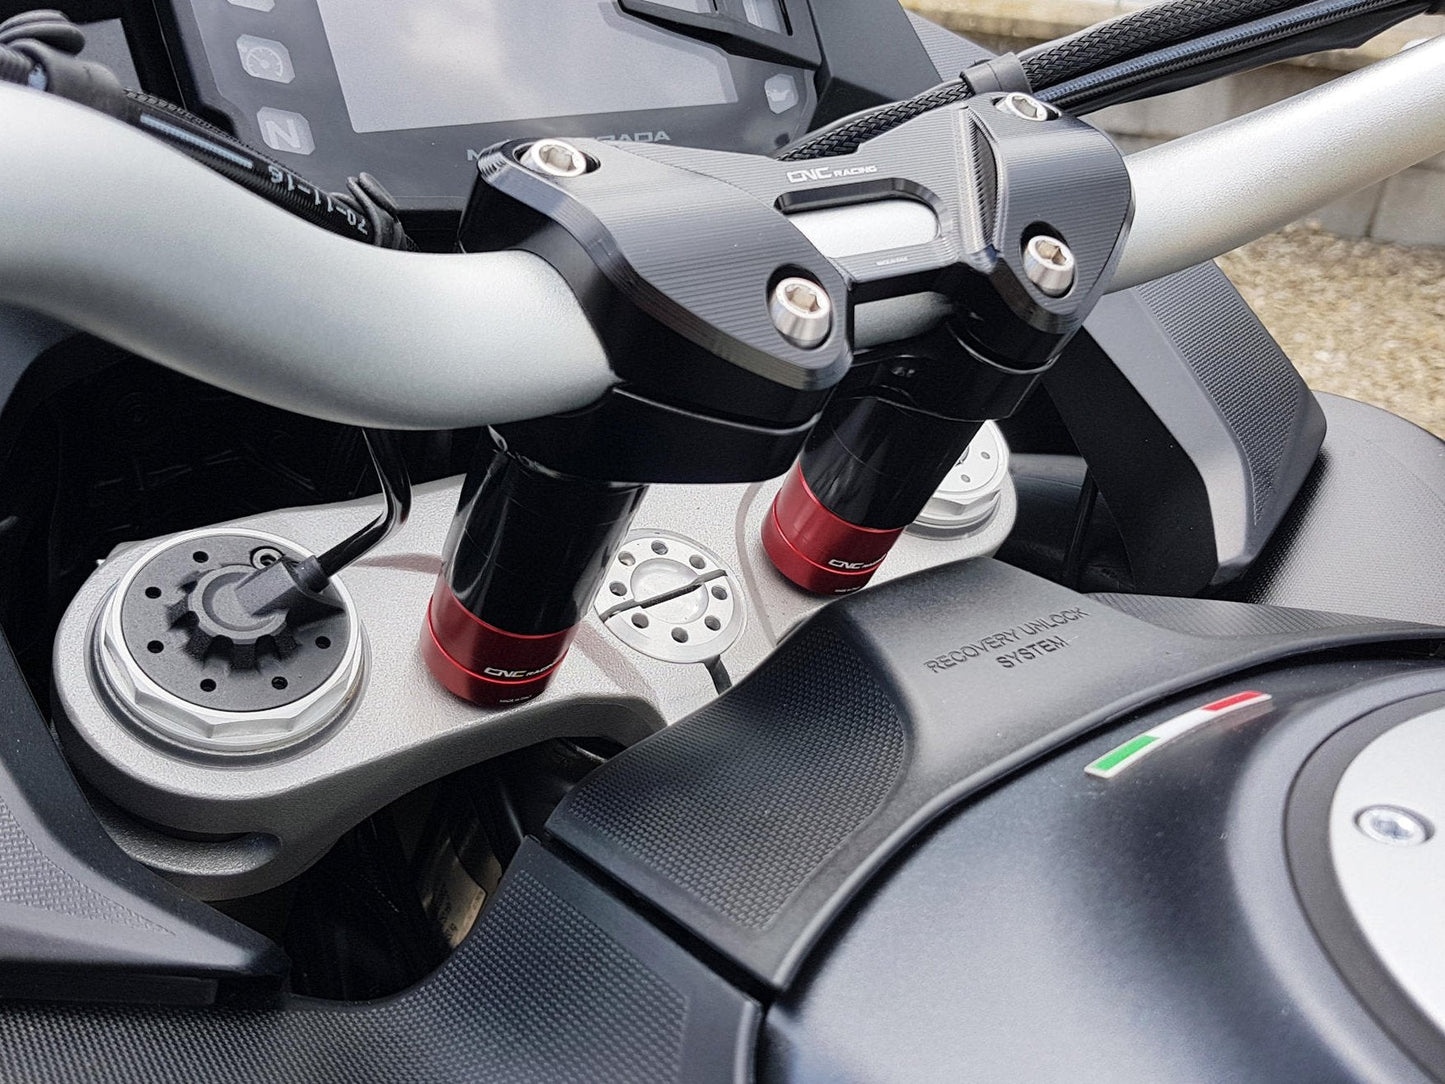 RM253 - CNC RACING Ducati Multistrada (2015+) Handlebar Riser Spacers